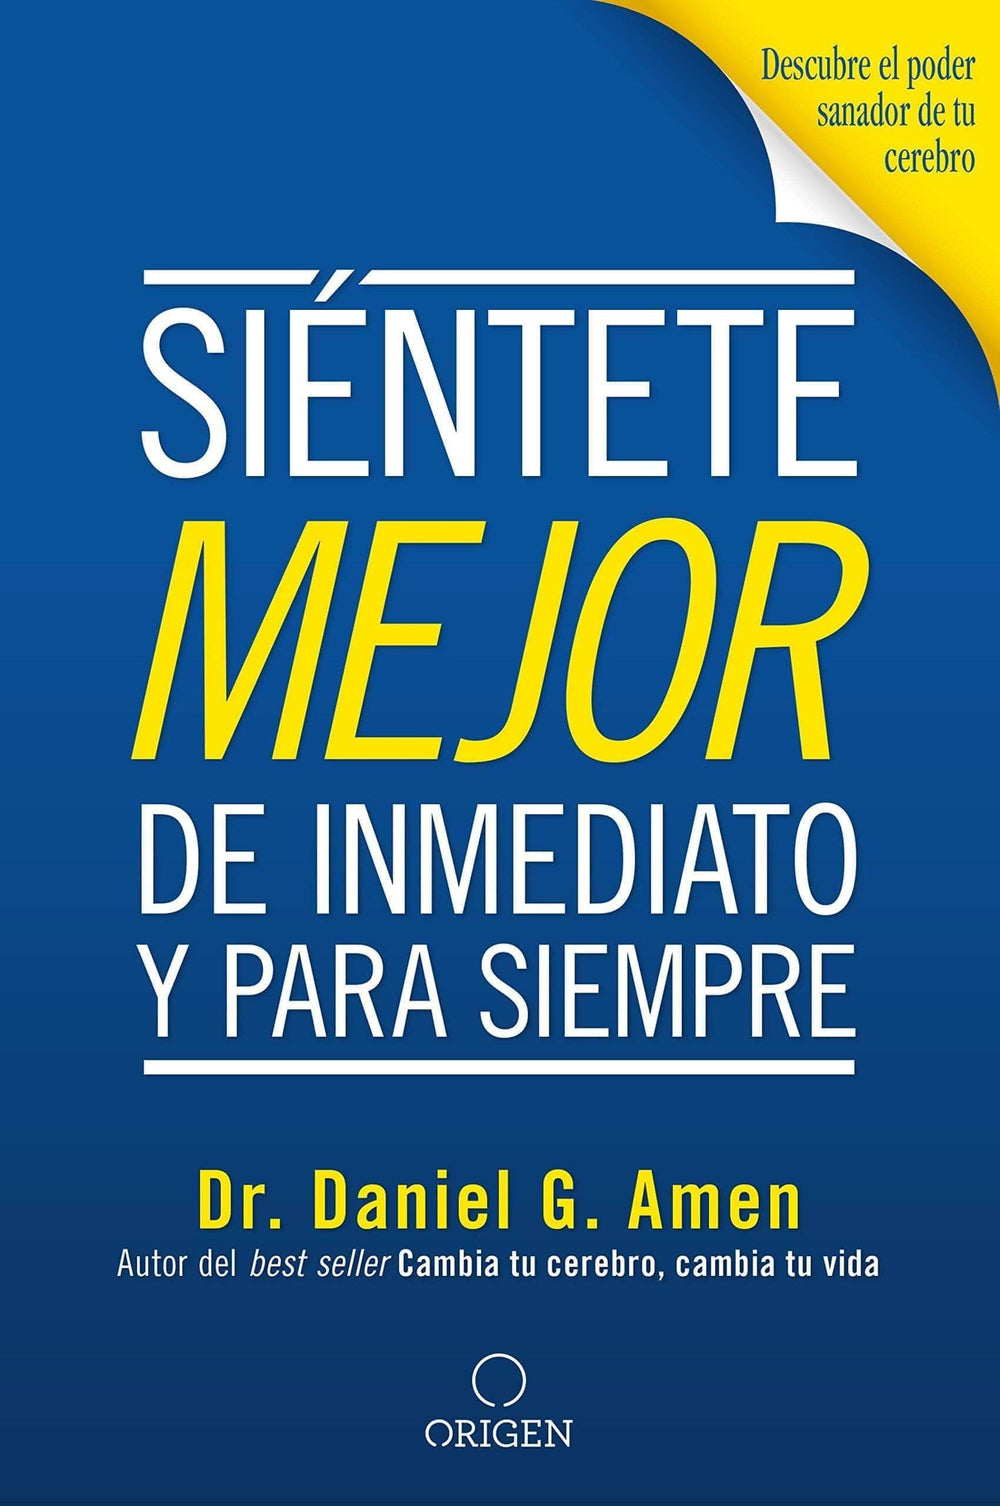 Siéntete mejor, de inmediato y para siempre - Daniel G. Amen M.D. - Pura Vida Books